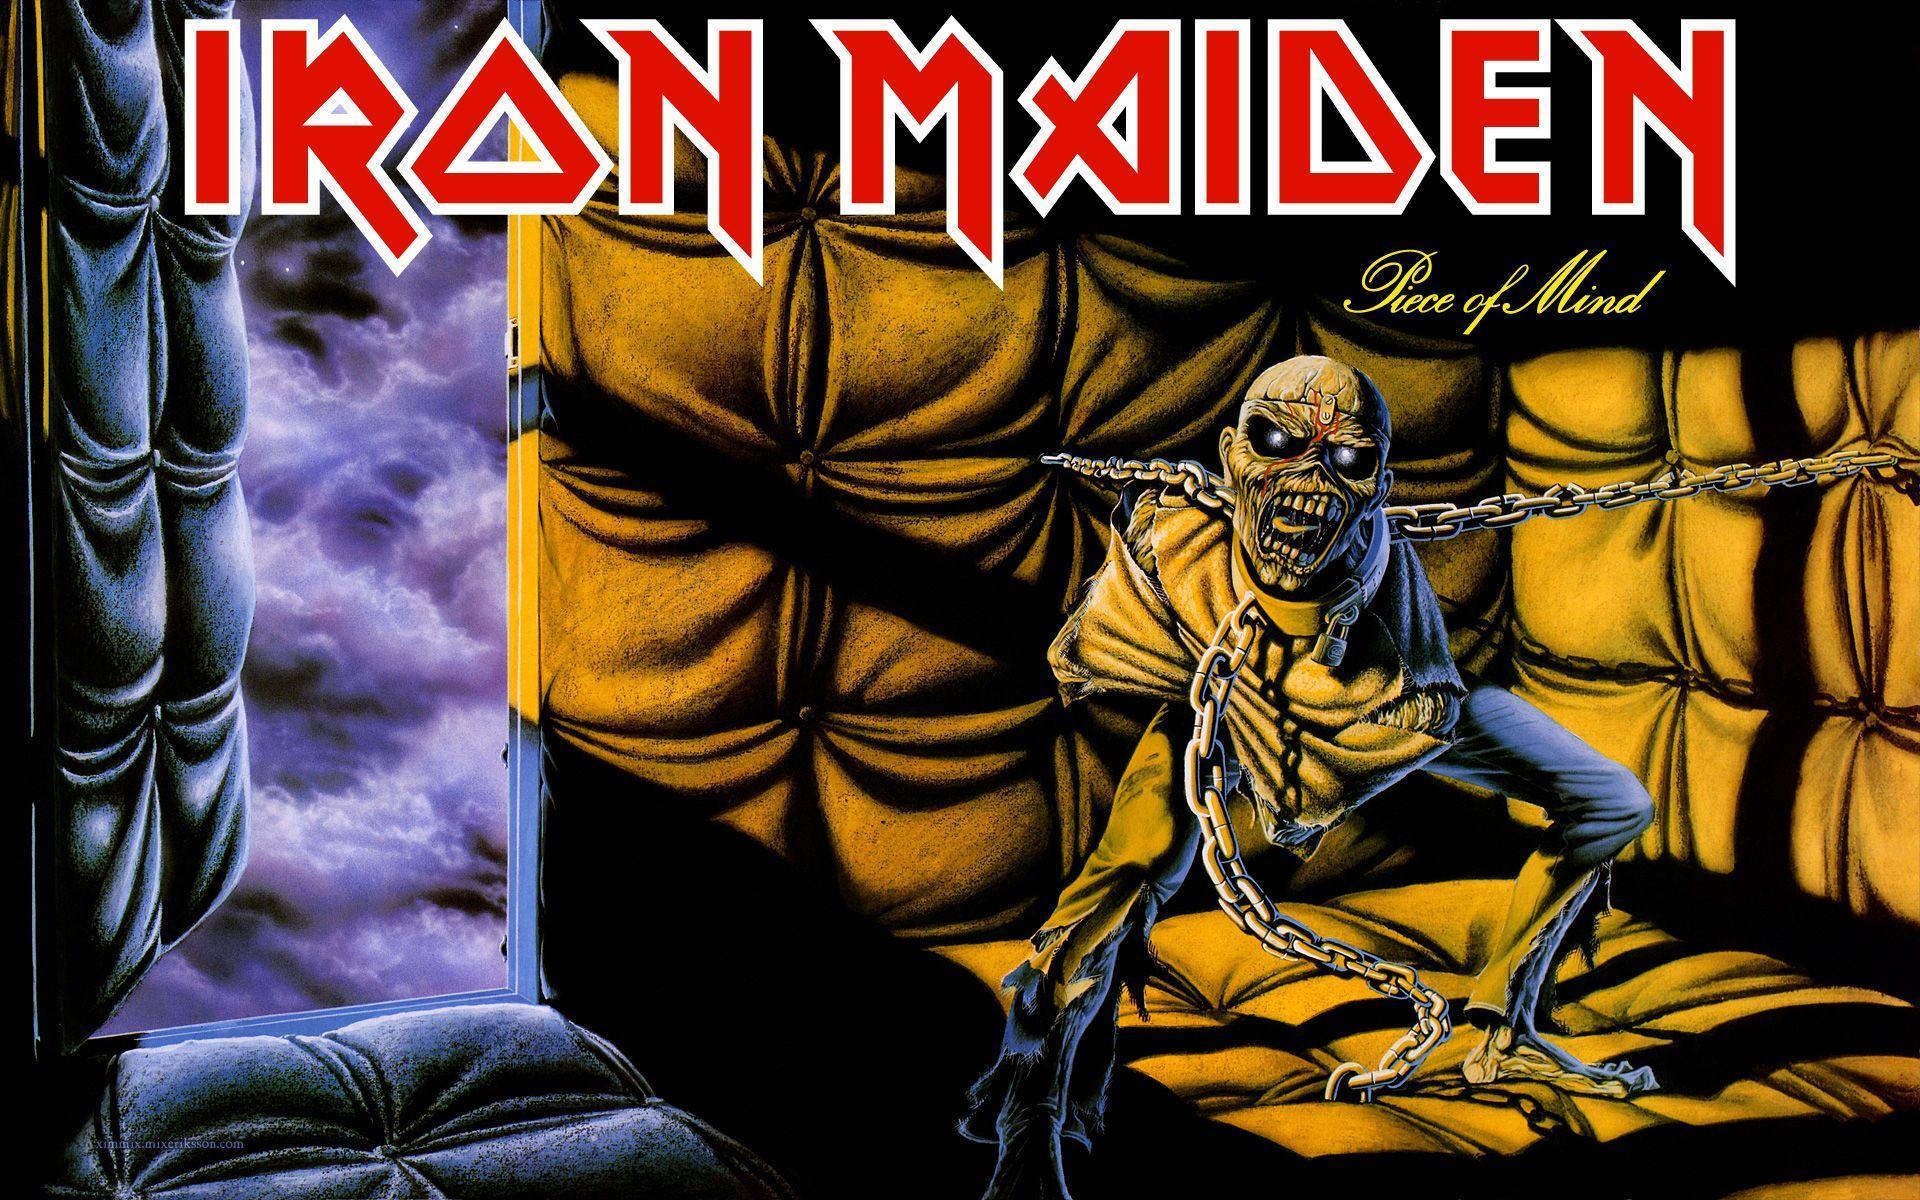 IRON MAIDEN heavy metal dark album cover eddie g wallpaper